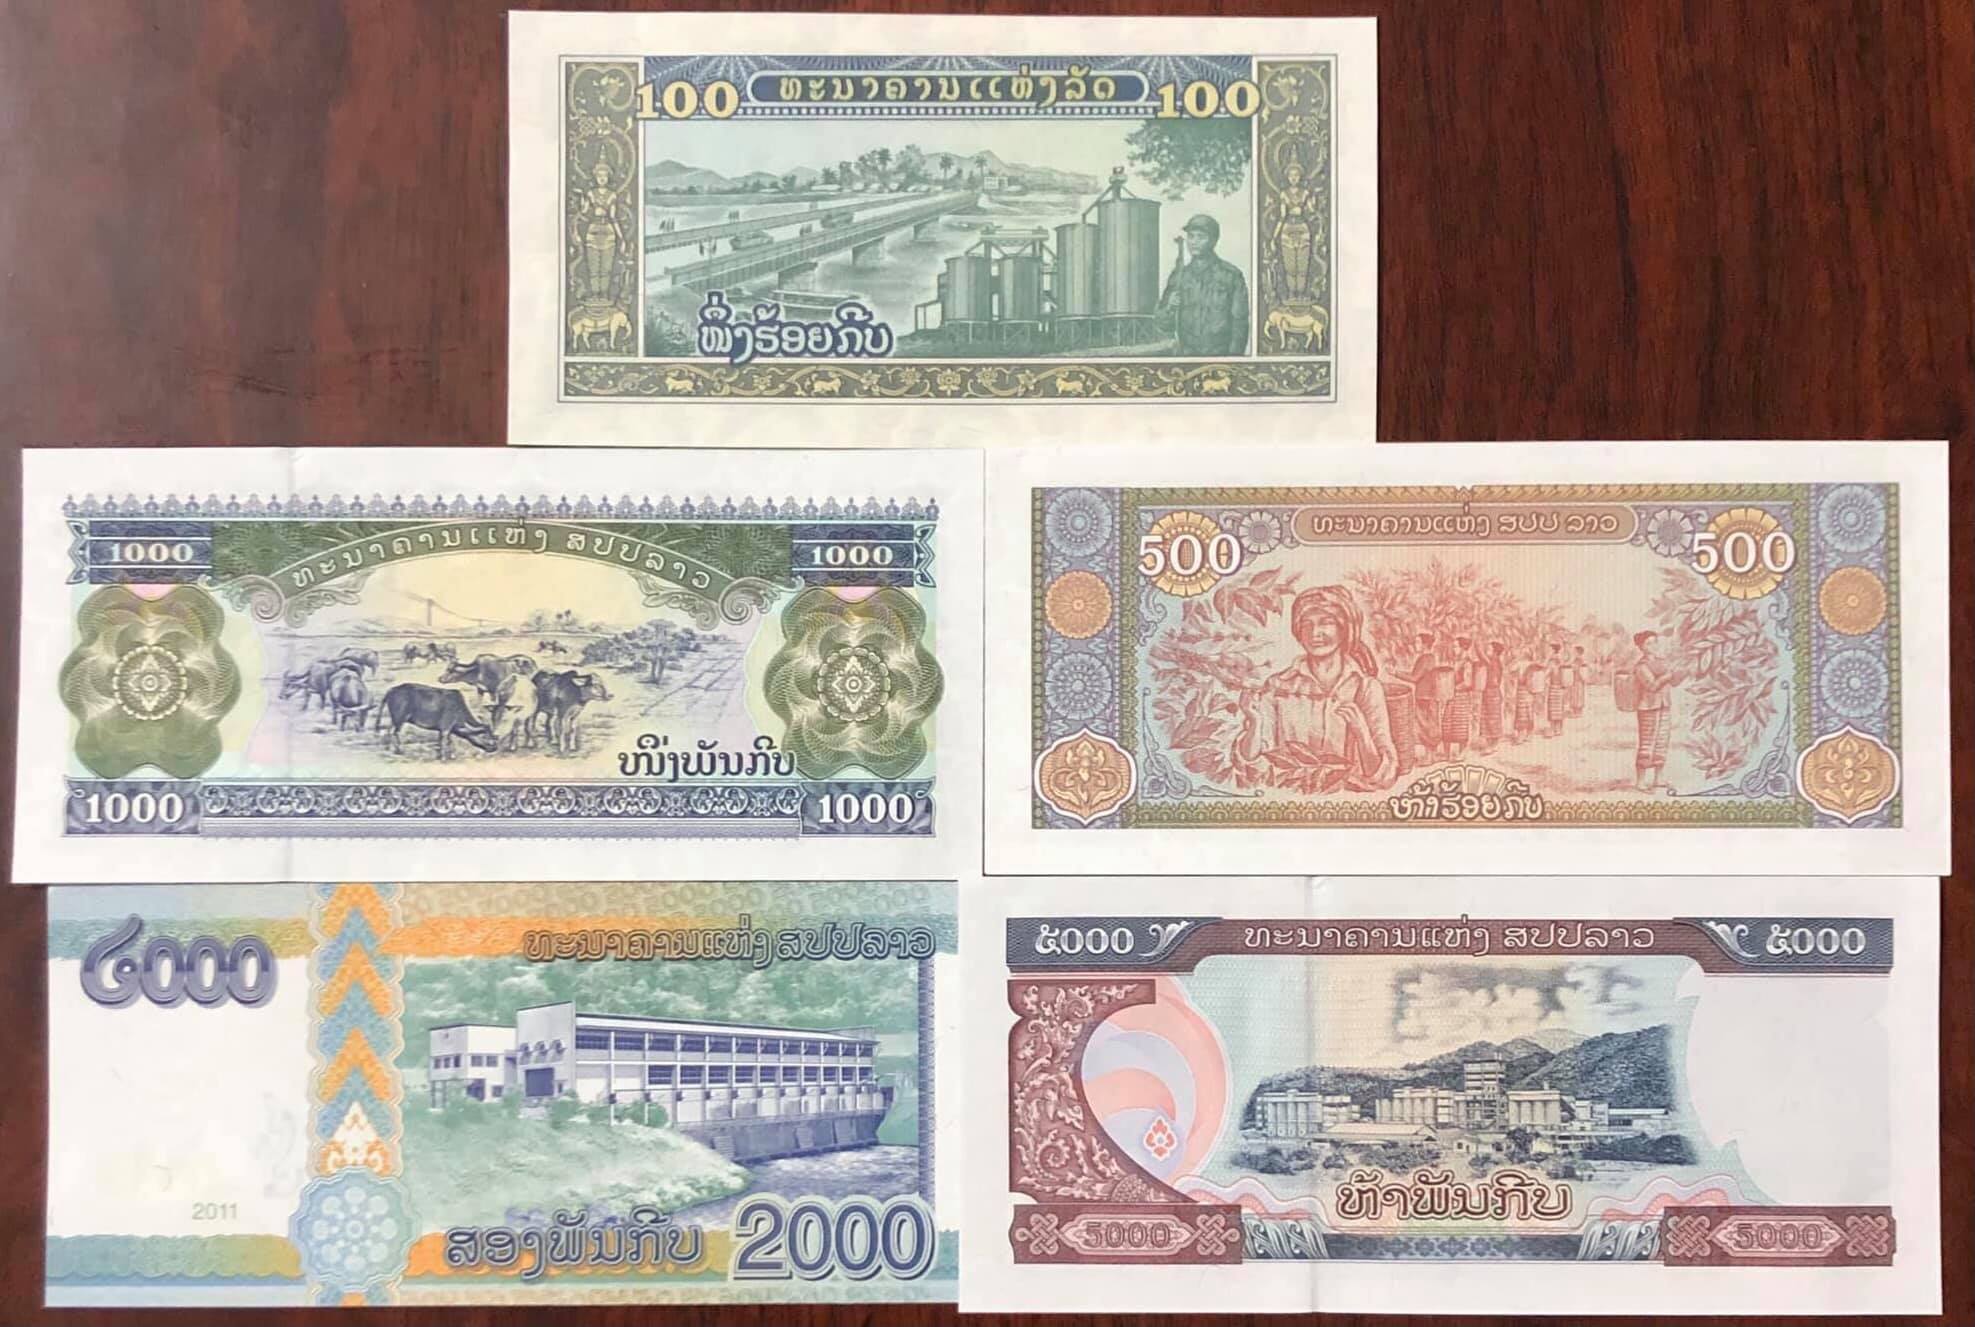 Sét tiền Lào 5 mệnh giá khác nhau mới cứng, tặng kèm phơi bảo quản tiền